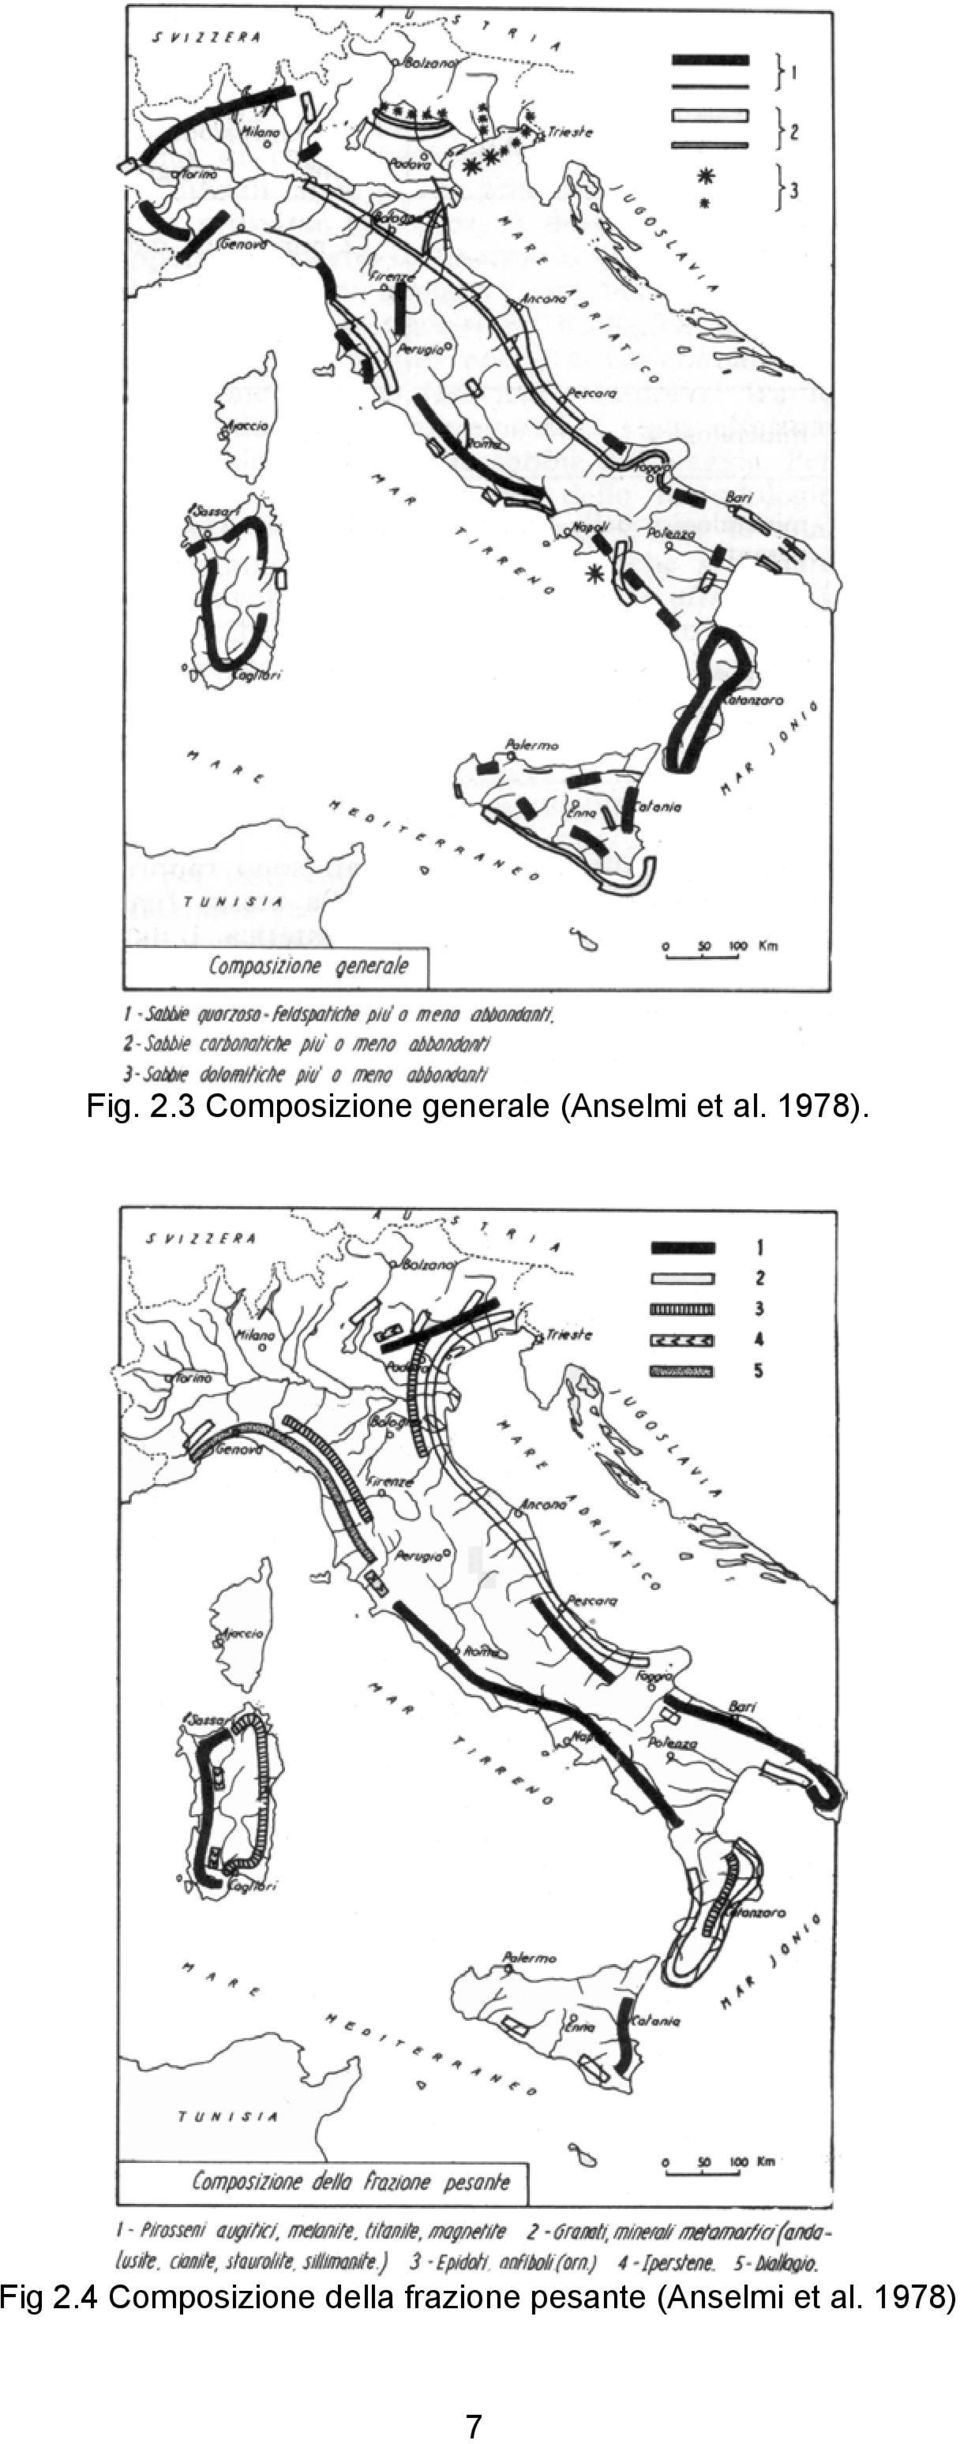 (Anselmi et al. 1978). Fig 2.